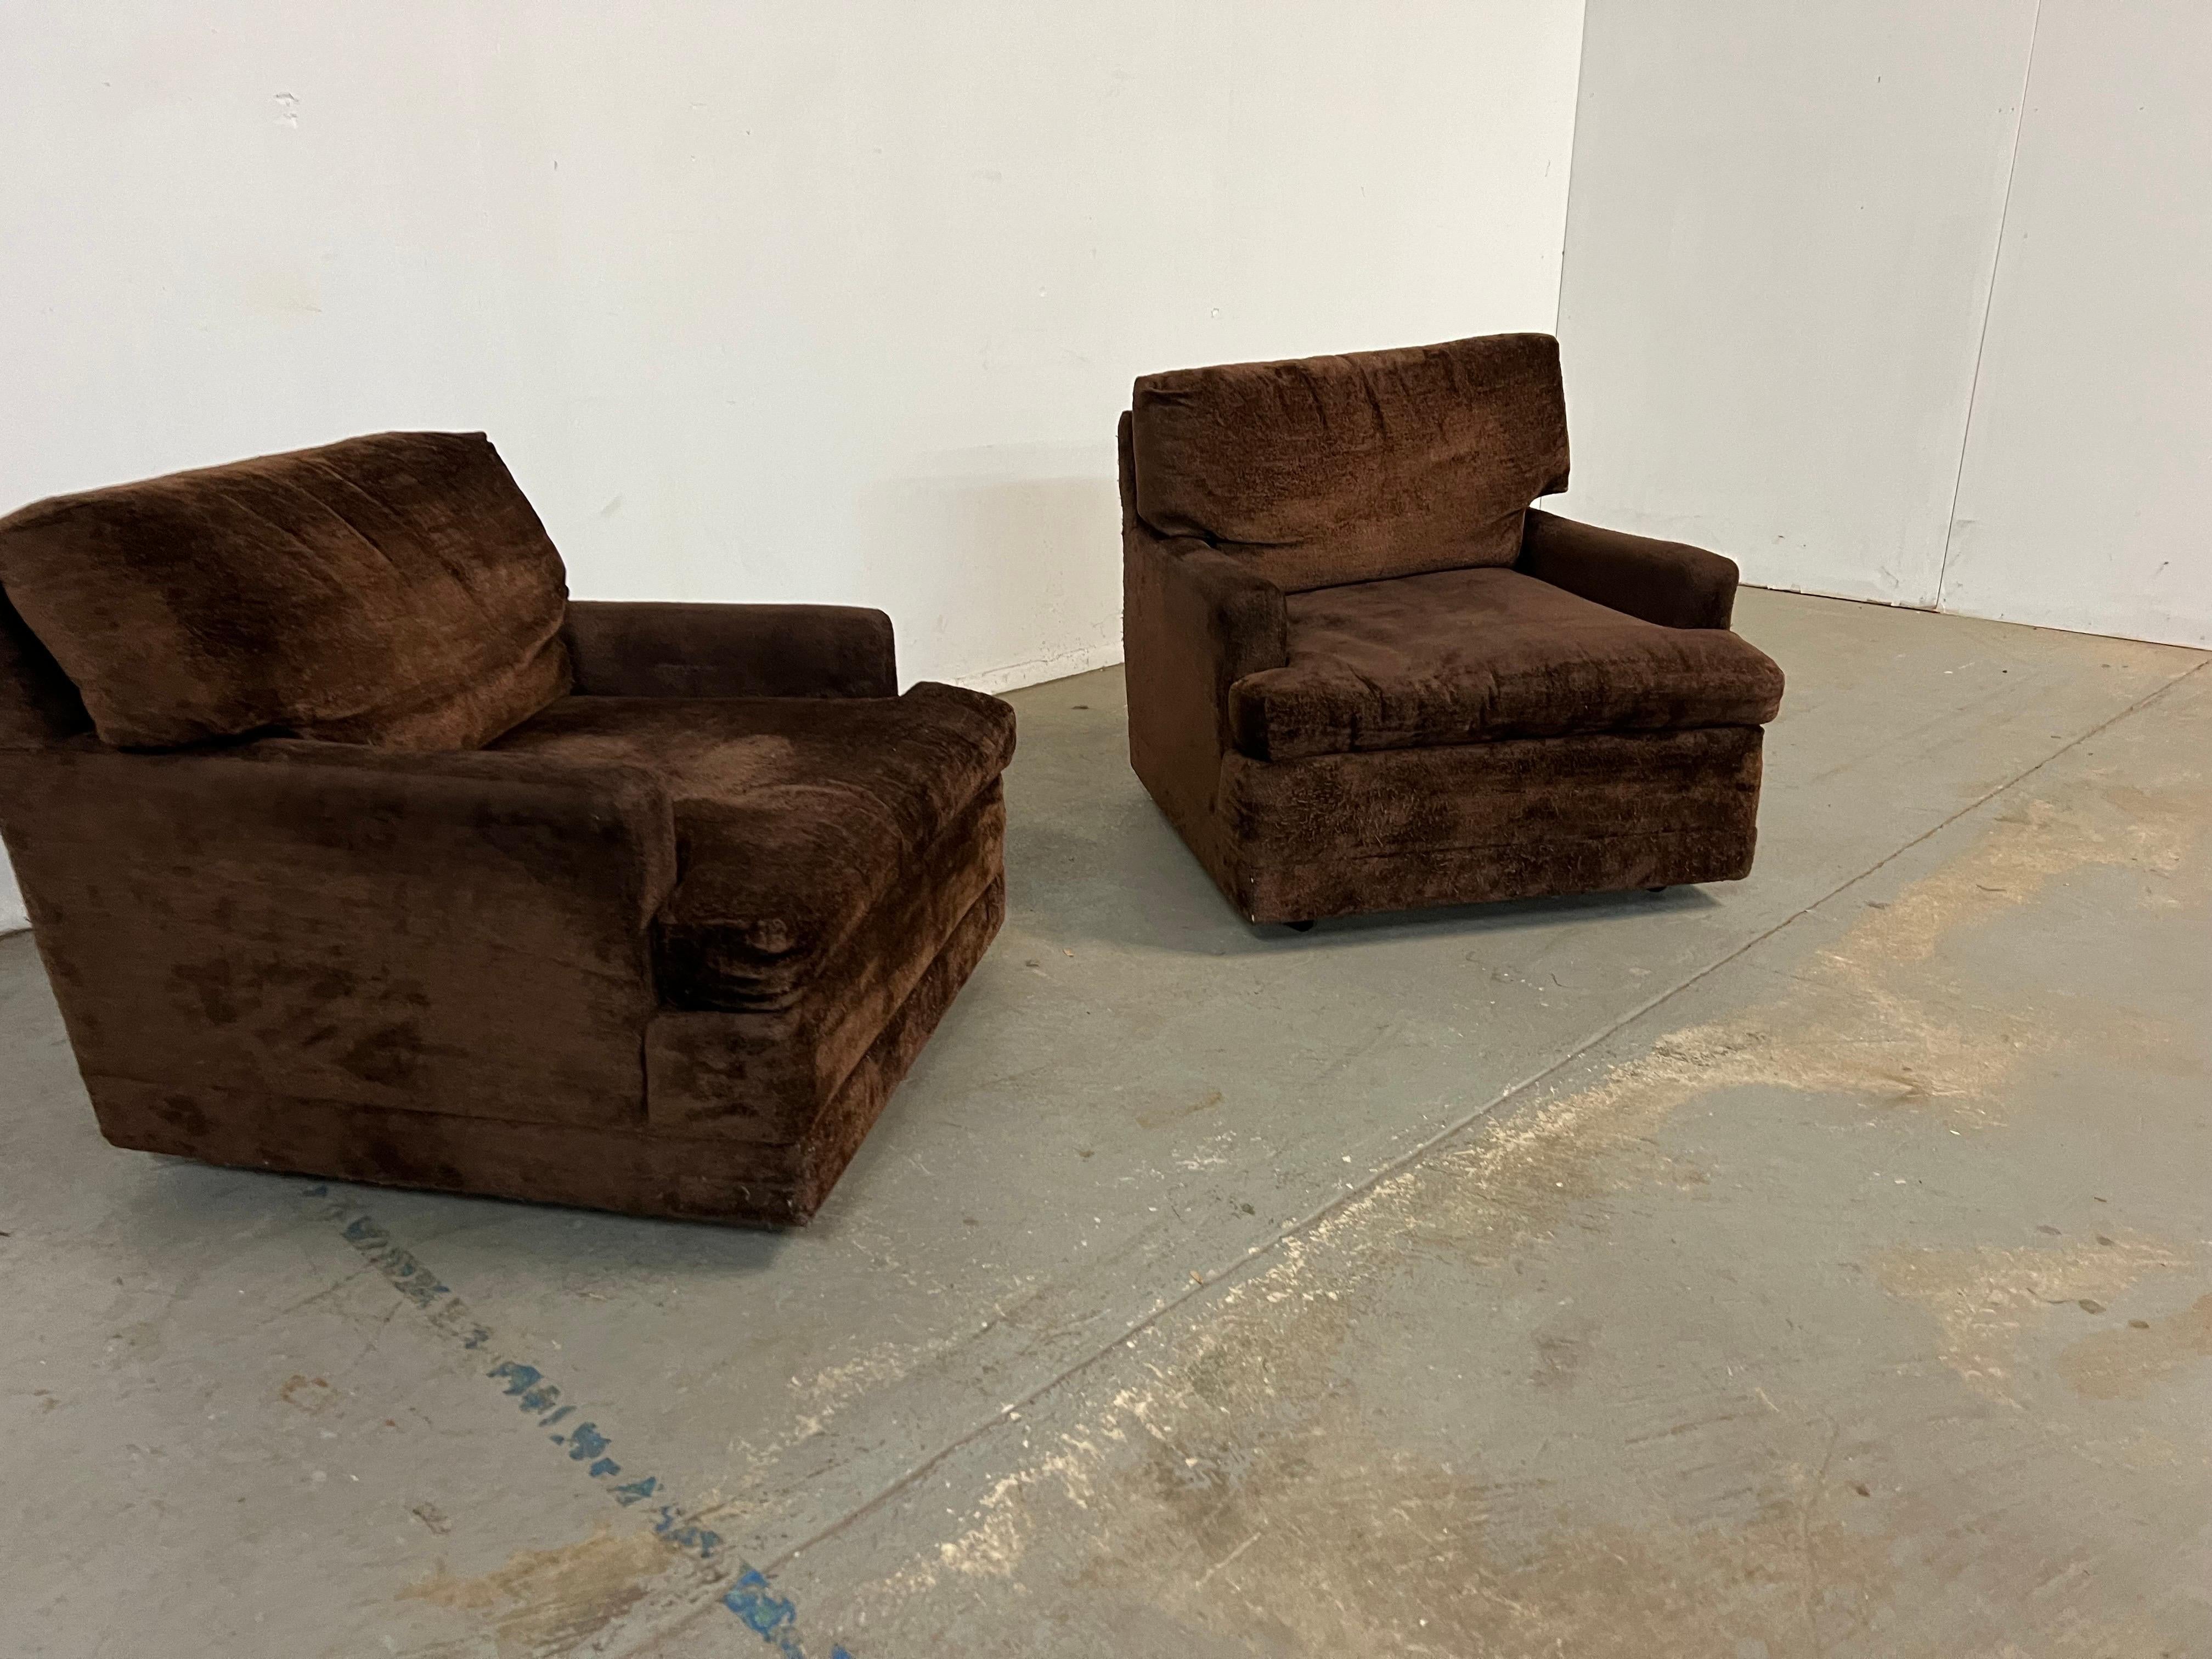 Angeboten wird ein Paar von Vintage Mid-Century Modern Stil Lounge / Club Stühle auf Rollen. Das Cube-Design entspricht der Ära -true Lounge Pit Chairs-Deep and Low. Die Stühle sind sehr bequem. Sie eignen sich perfekt für jeden Raum und jedes